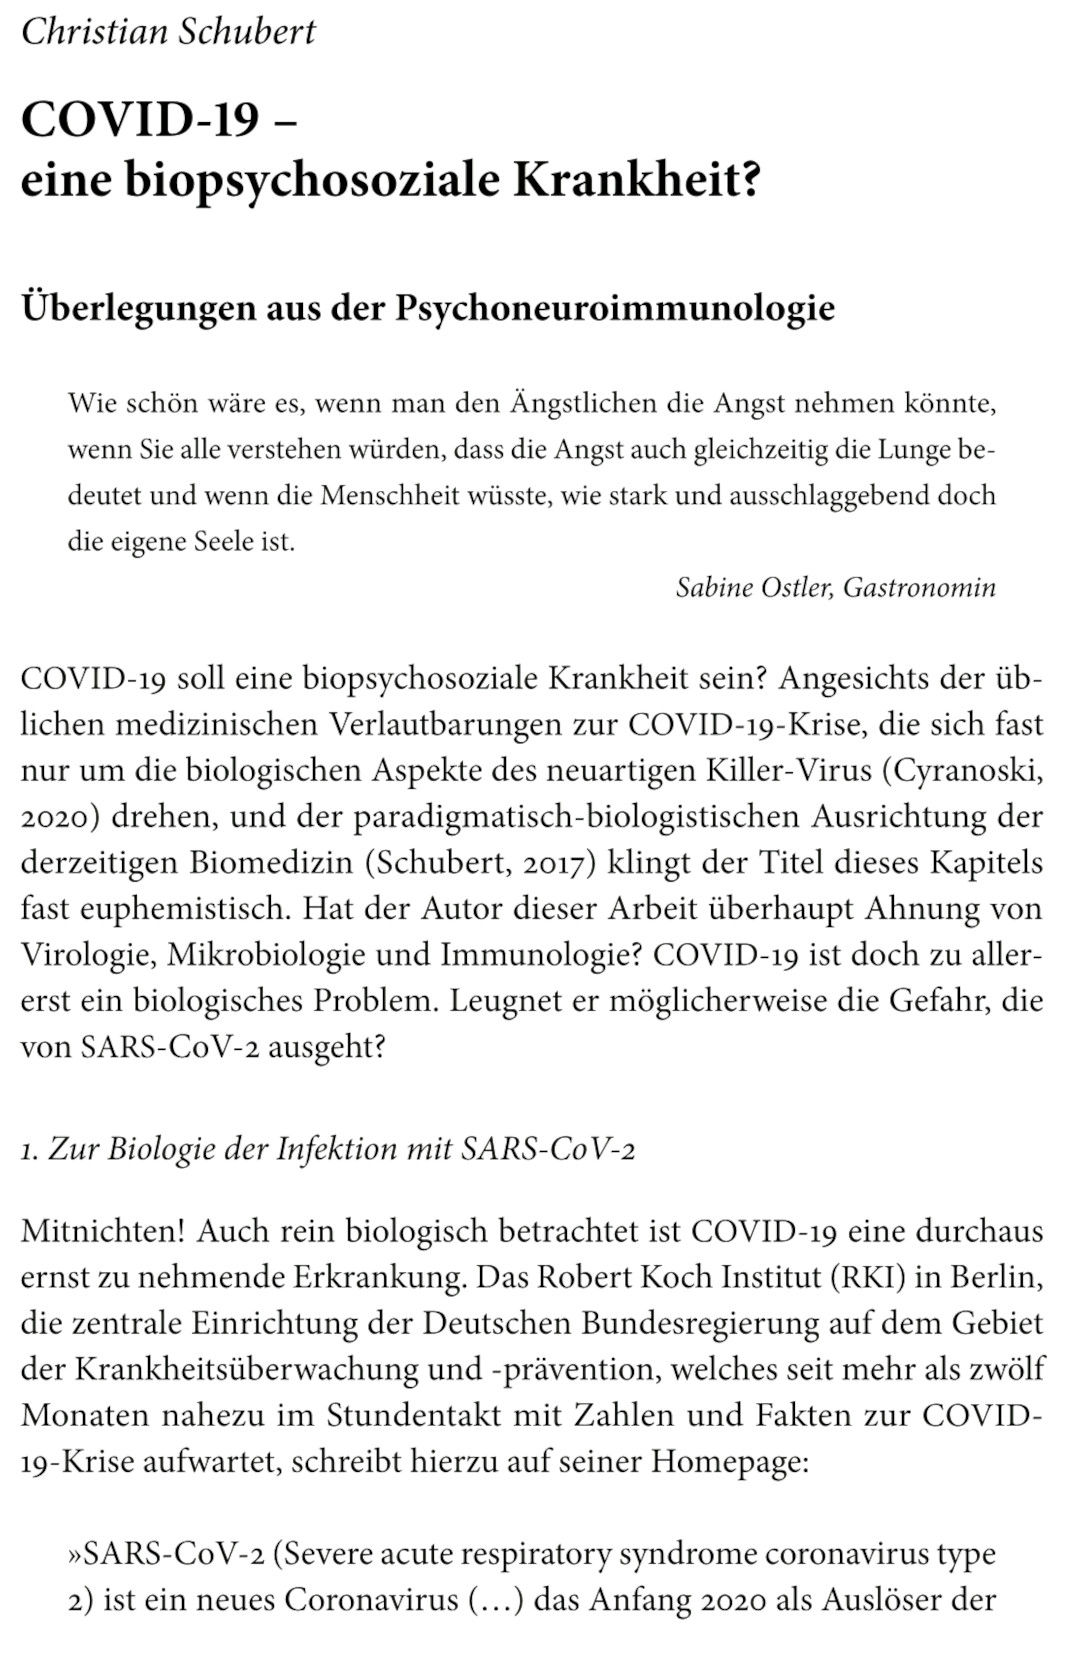 Read more about the article COVID-19- eine biopsychosoziale Krankheit? – von Christian Schubert